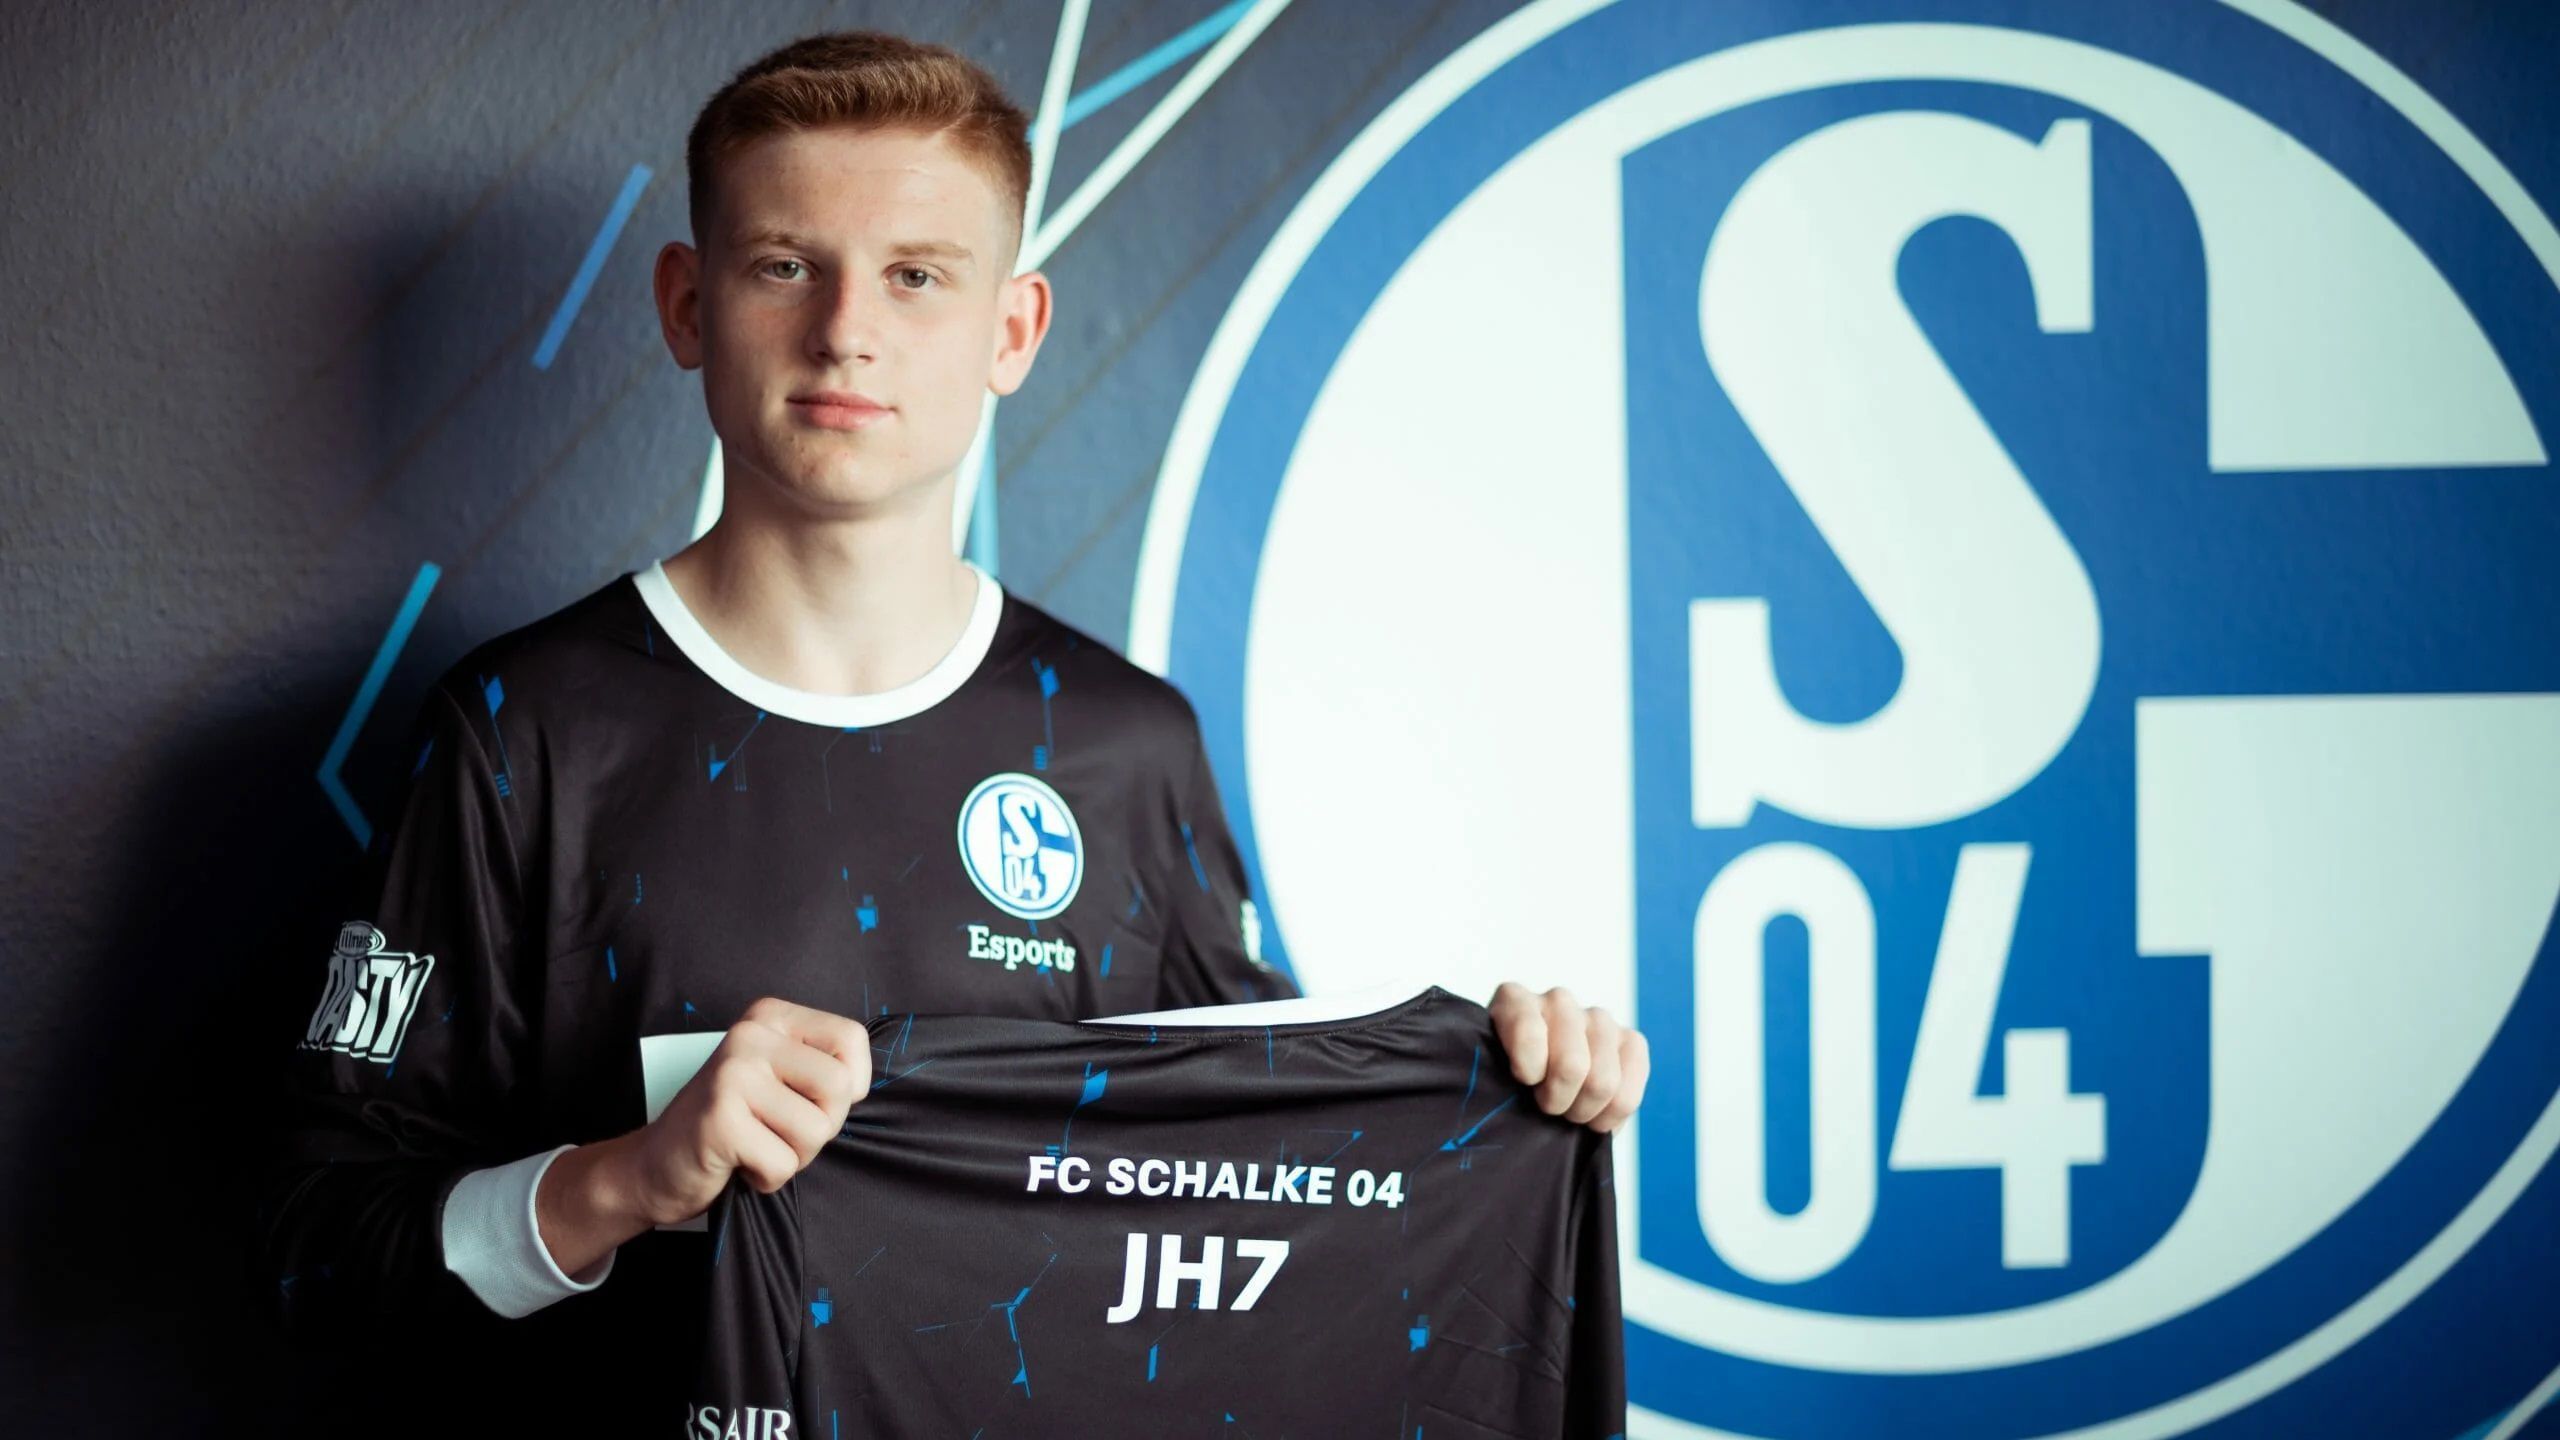 
                <strong>Joe "JH7" Hellmann</strong><br>
                Dagegen ist Joe "JH7" Hellmann ein vergleichsweise kleiner Name. Doch der Schalker eSportler hat sich klammheimlich zu einem der besten Spieler der Welt gemausert. Im Monat Februar liegt der gerade einmal 17-Jährige derzeit im PS4-Leaderboard weltweit auf Platz zwei. 
              